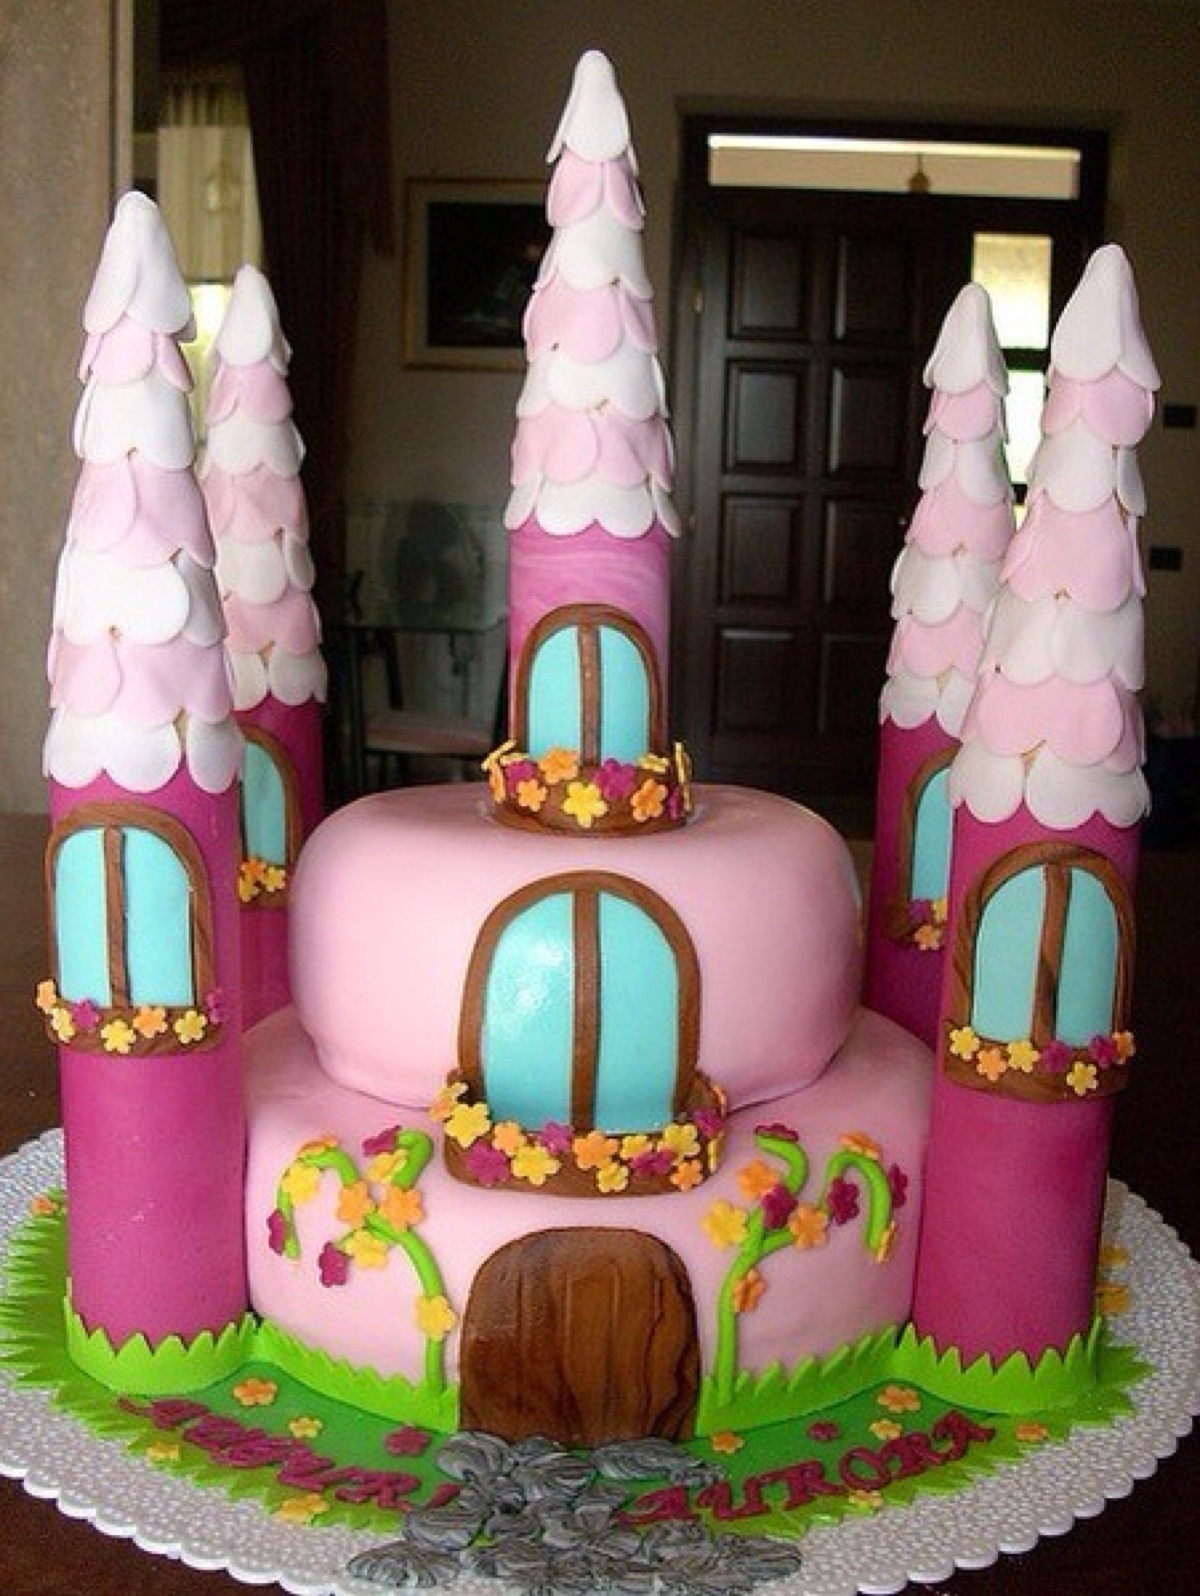 城堡系列 创意翻糖蛋糕赏析!